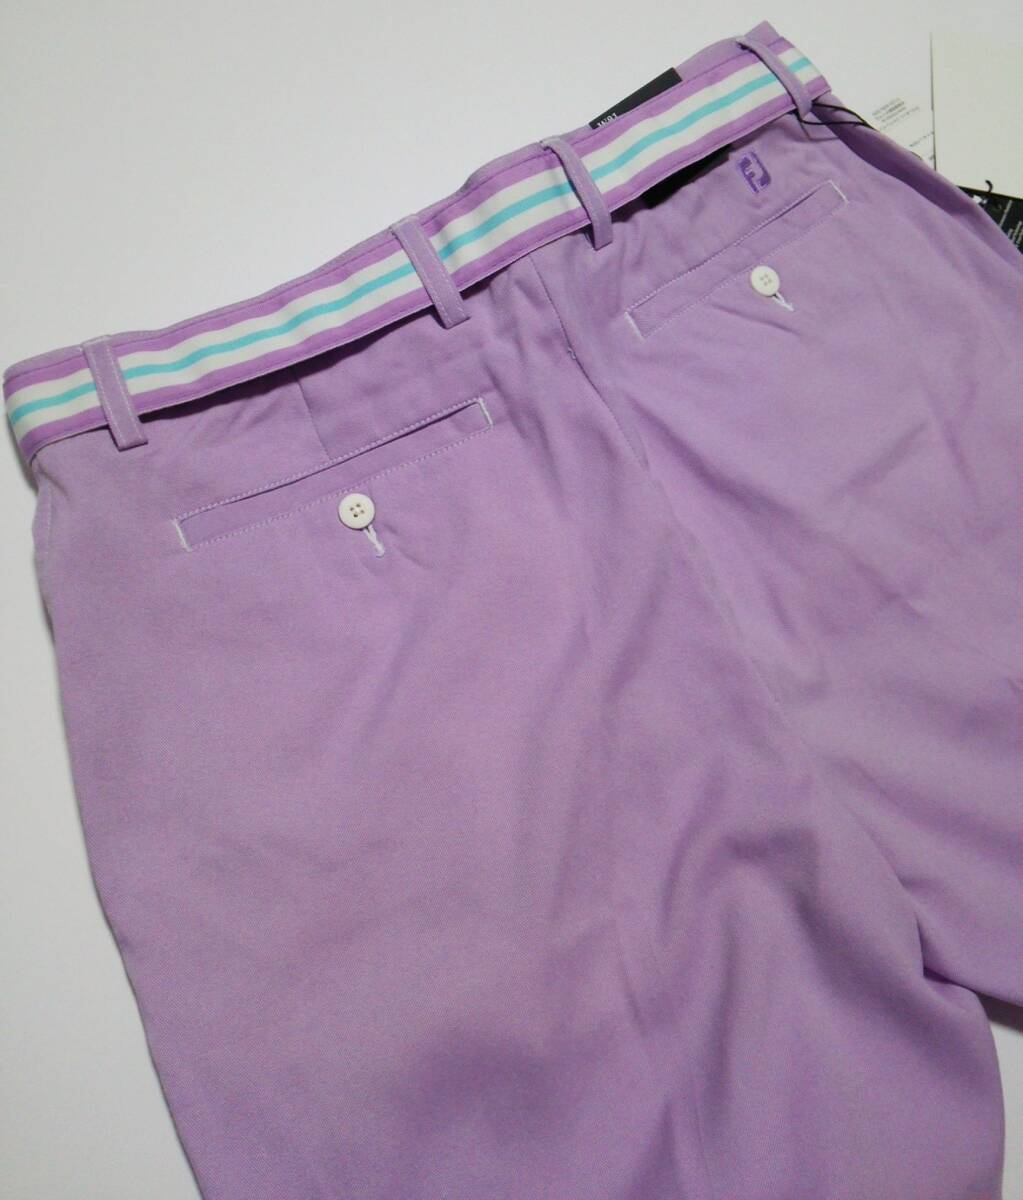  новый товар FJ foot Joy * ремень имеется | весна лето * Golf шорты Golf брюки нейлон брюки нейлон шорты фиолетовый Golf одежда мужской W91